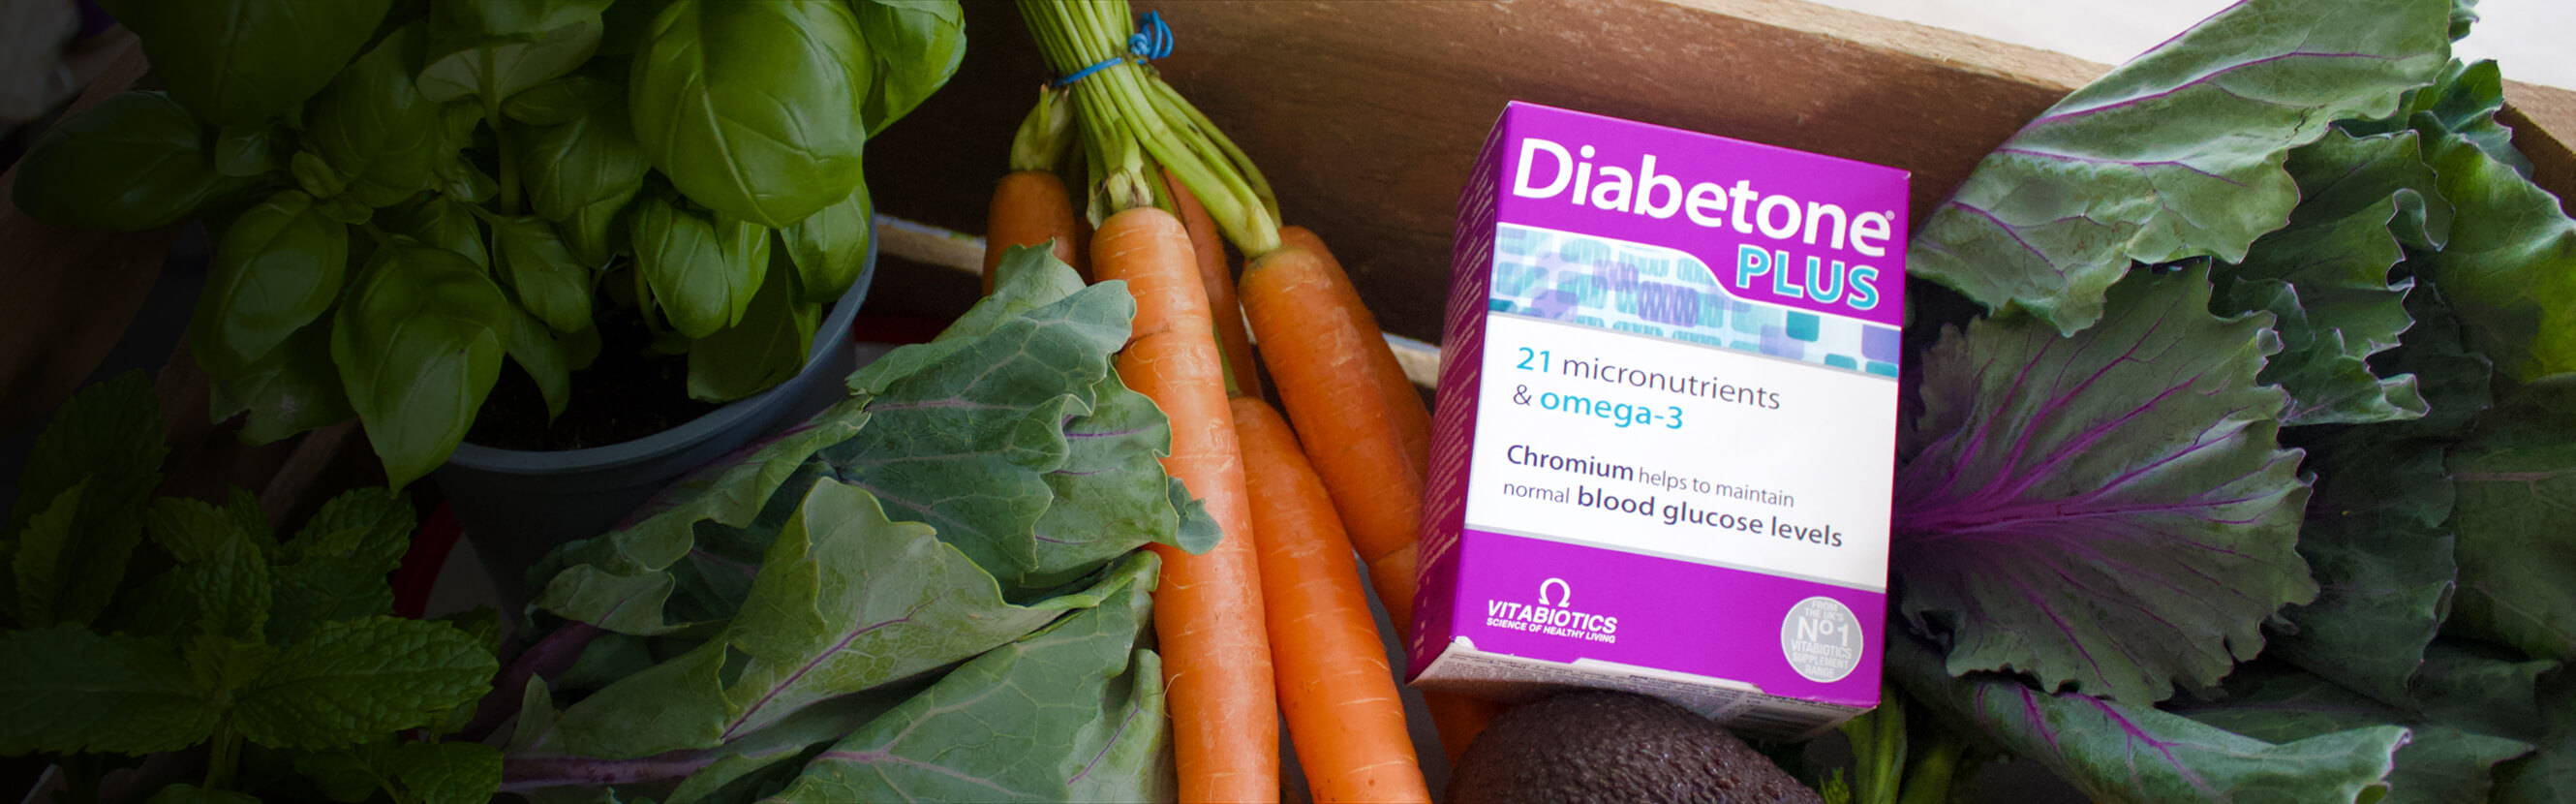  Diabetone Plus Pack In A Vegetable Backet  